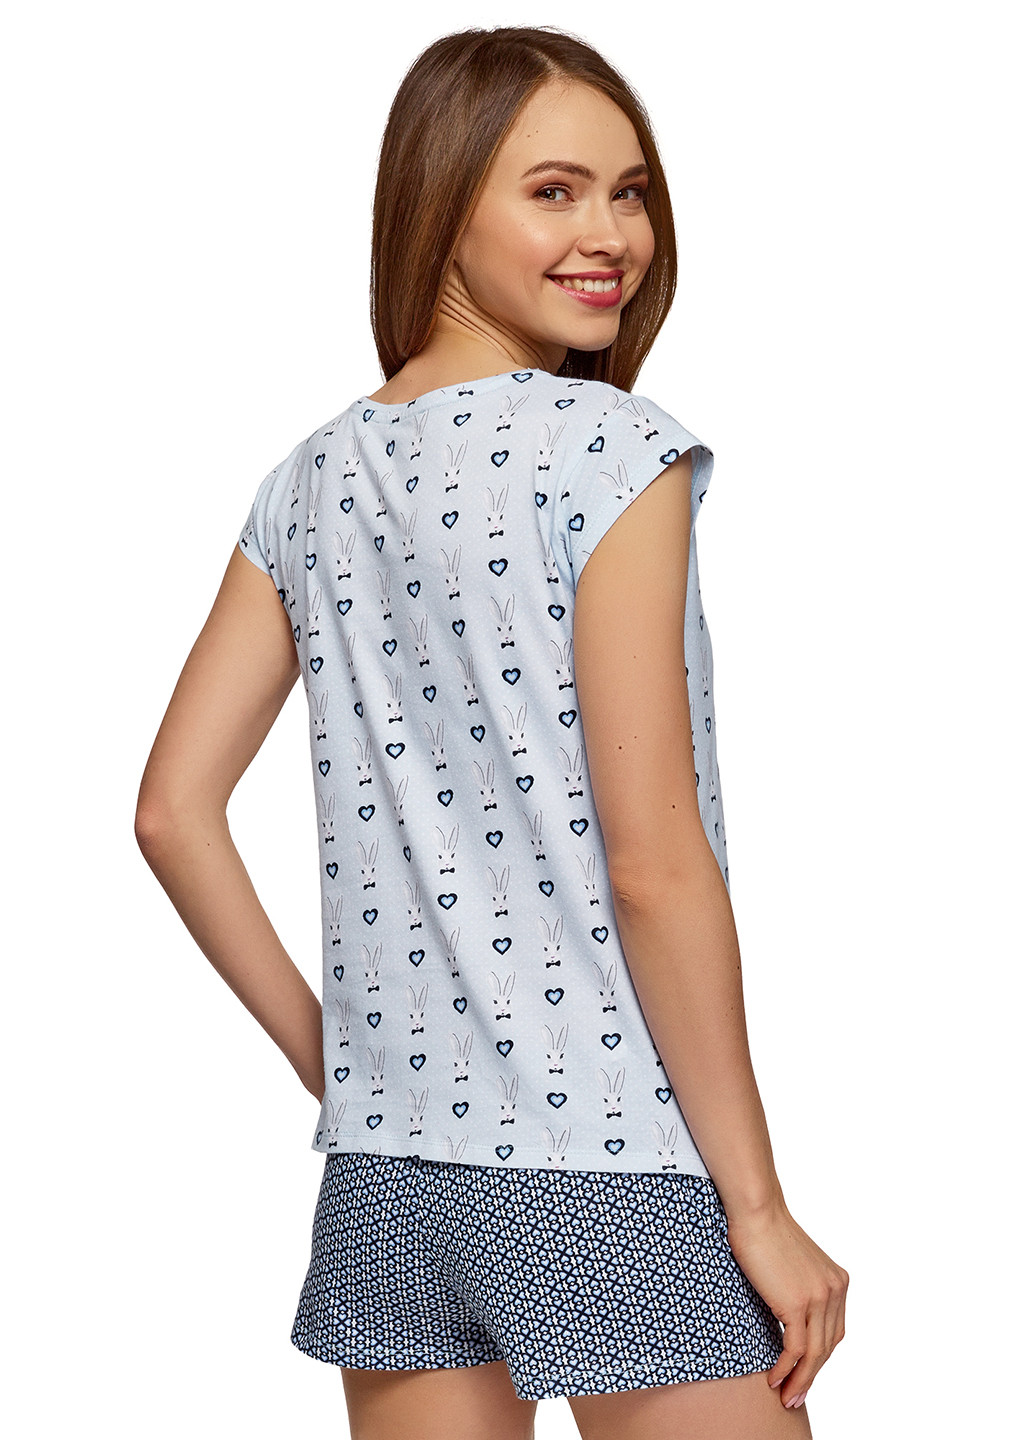 Синяя всесезон пижама (футболка, шорты) футболка + шорты Oodji